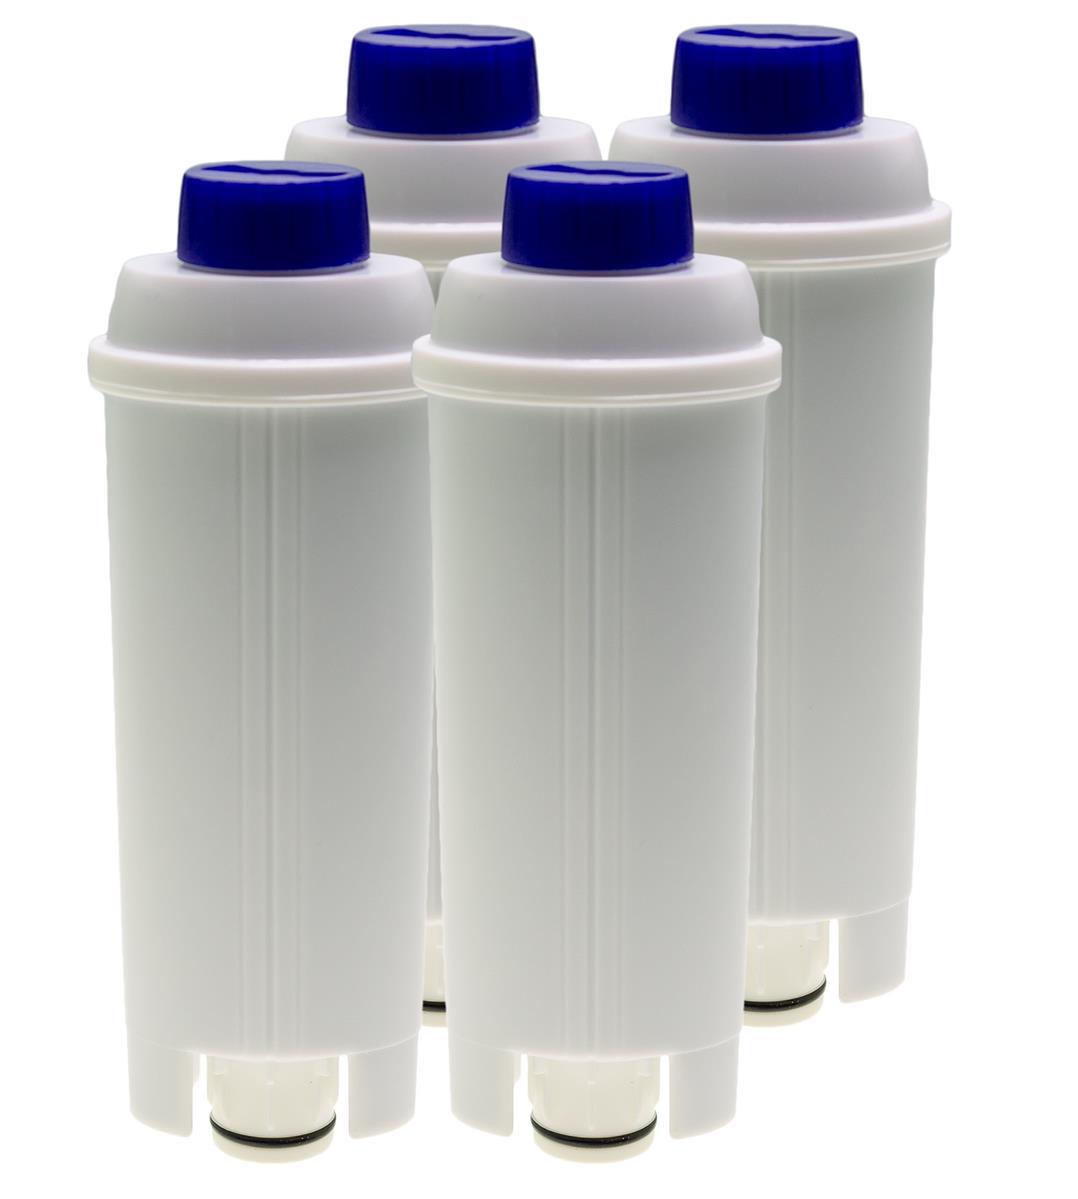 10 Stück Filterpatronen Wasserfilter Filter für DeLonghi PrimaDonna 